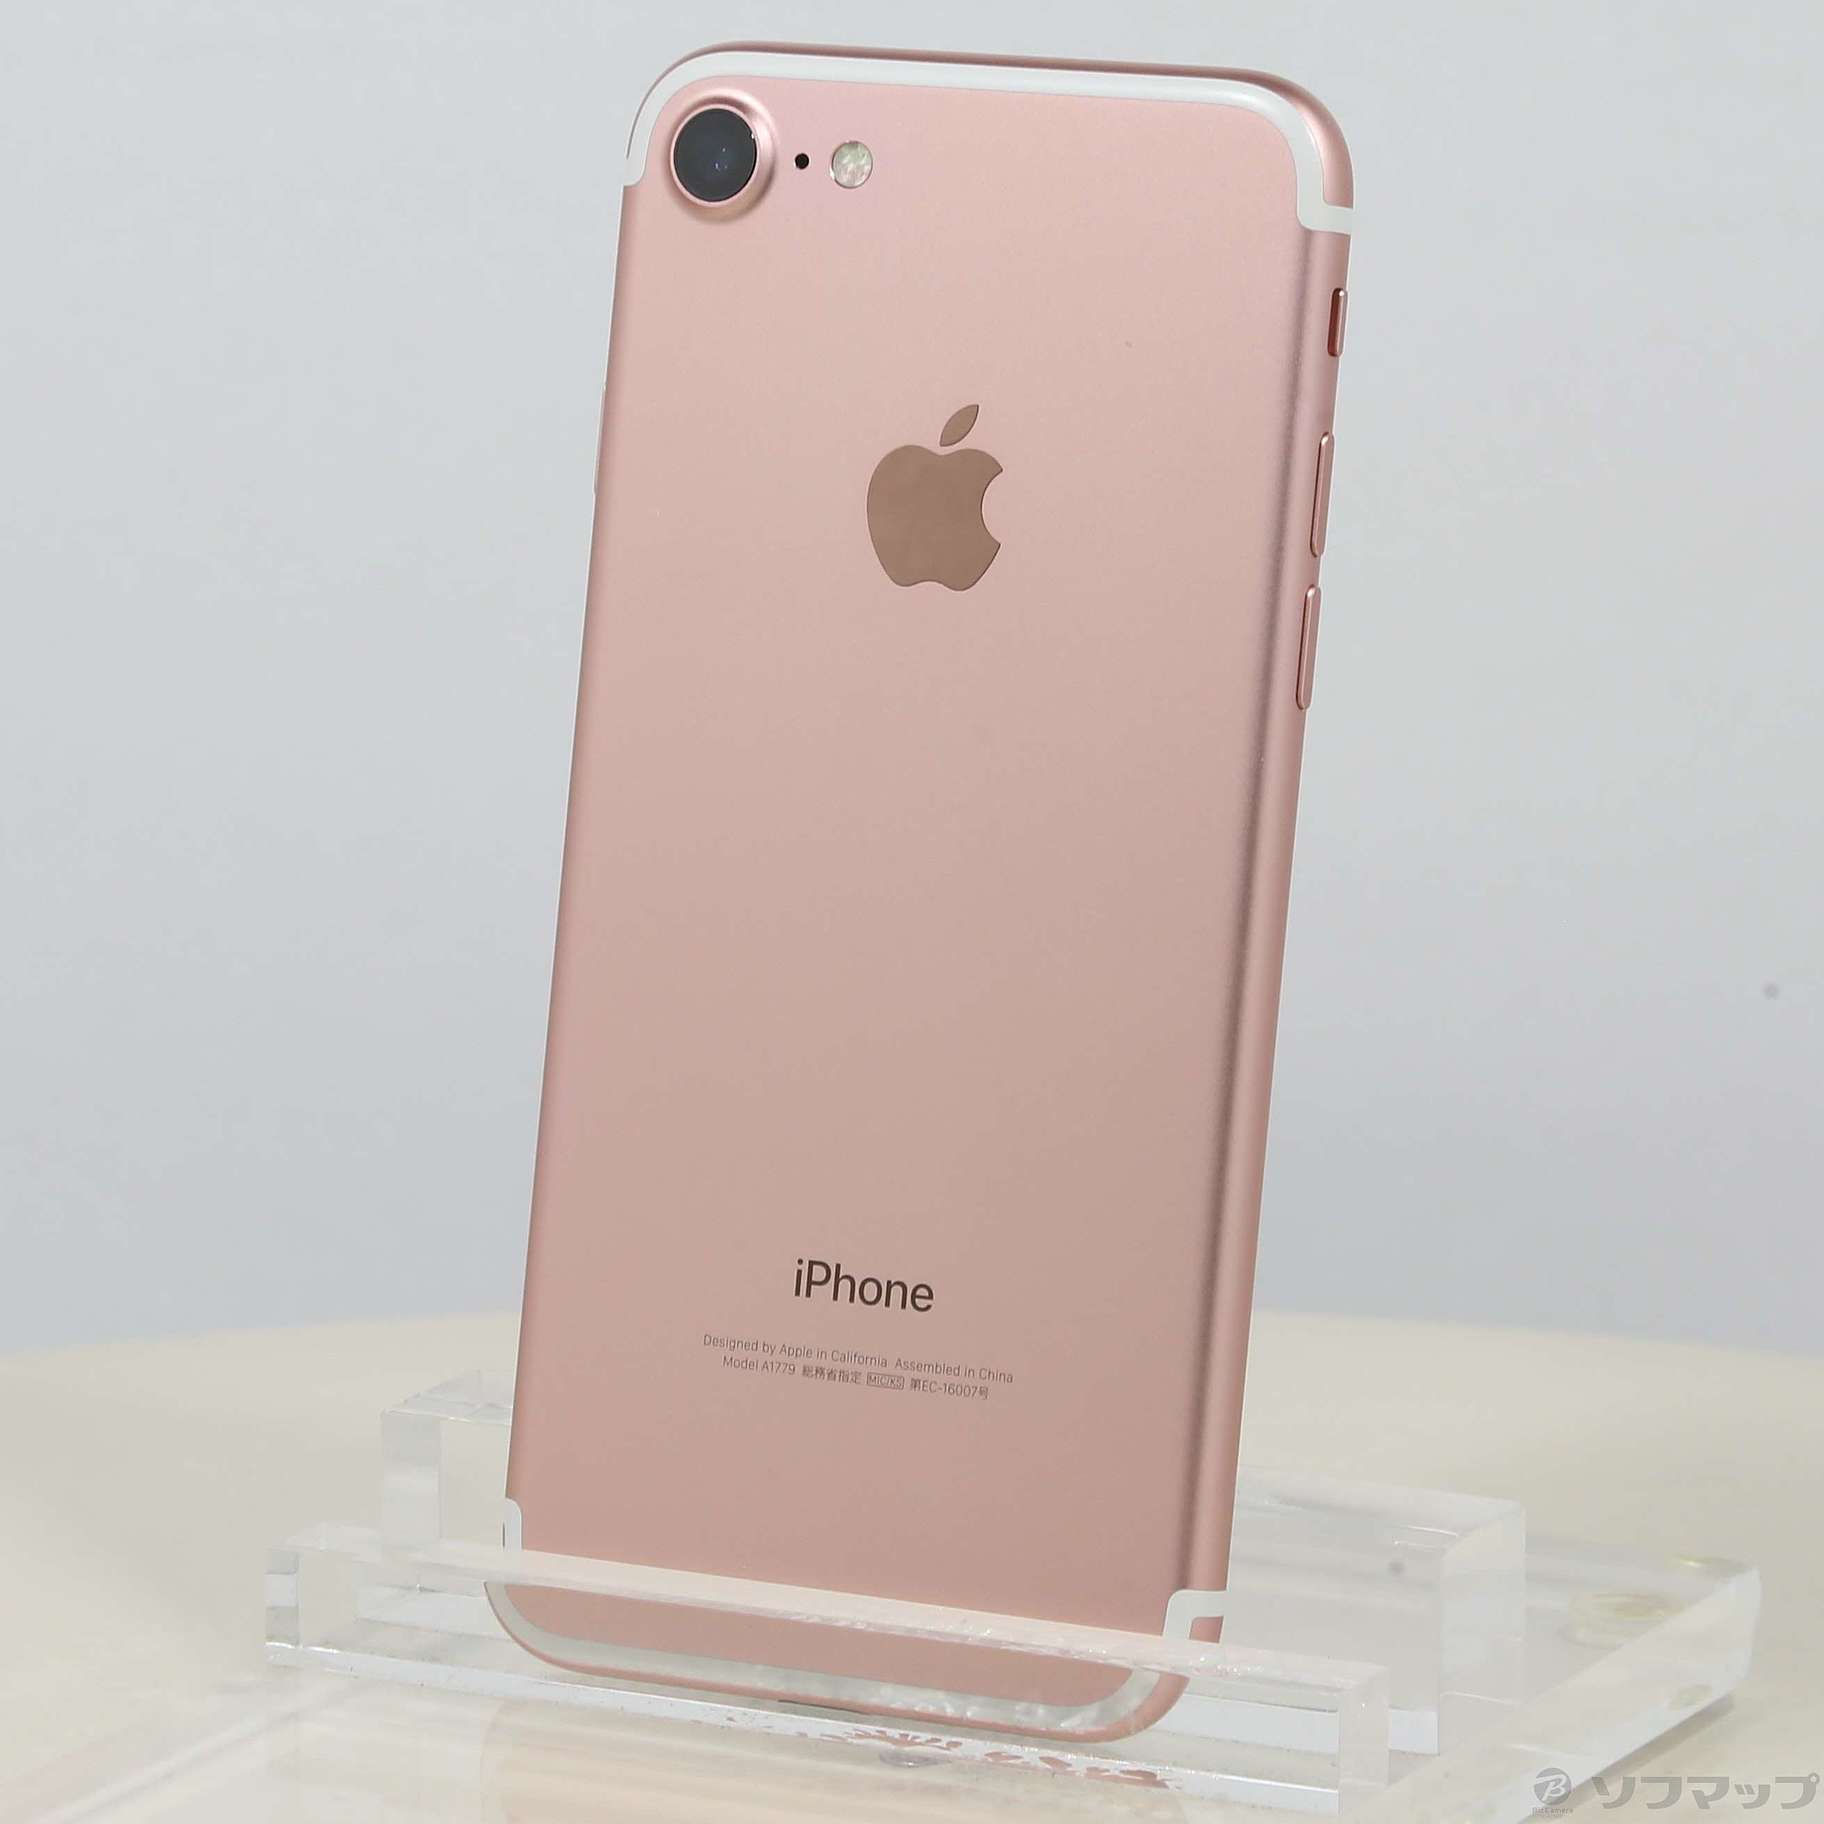 スマートフォン/携帯電話iPhone7 ピンクゴールド 32G SIMフリー